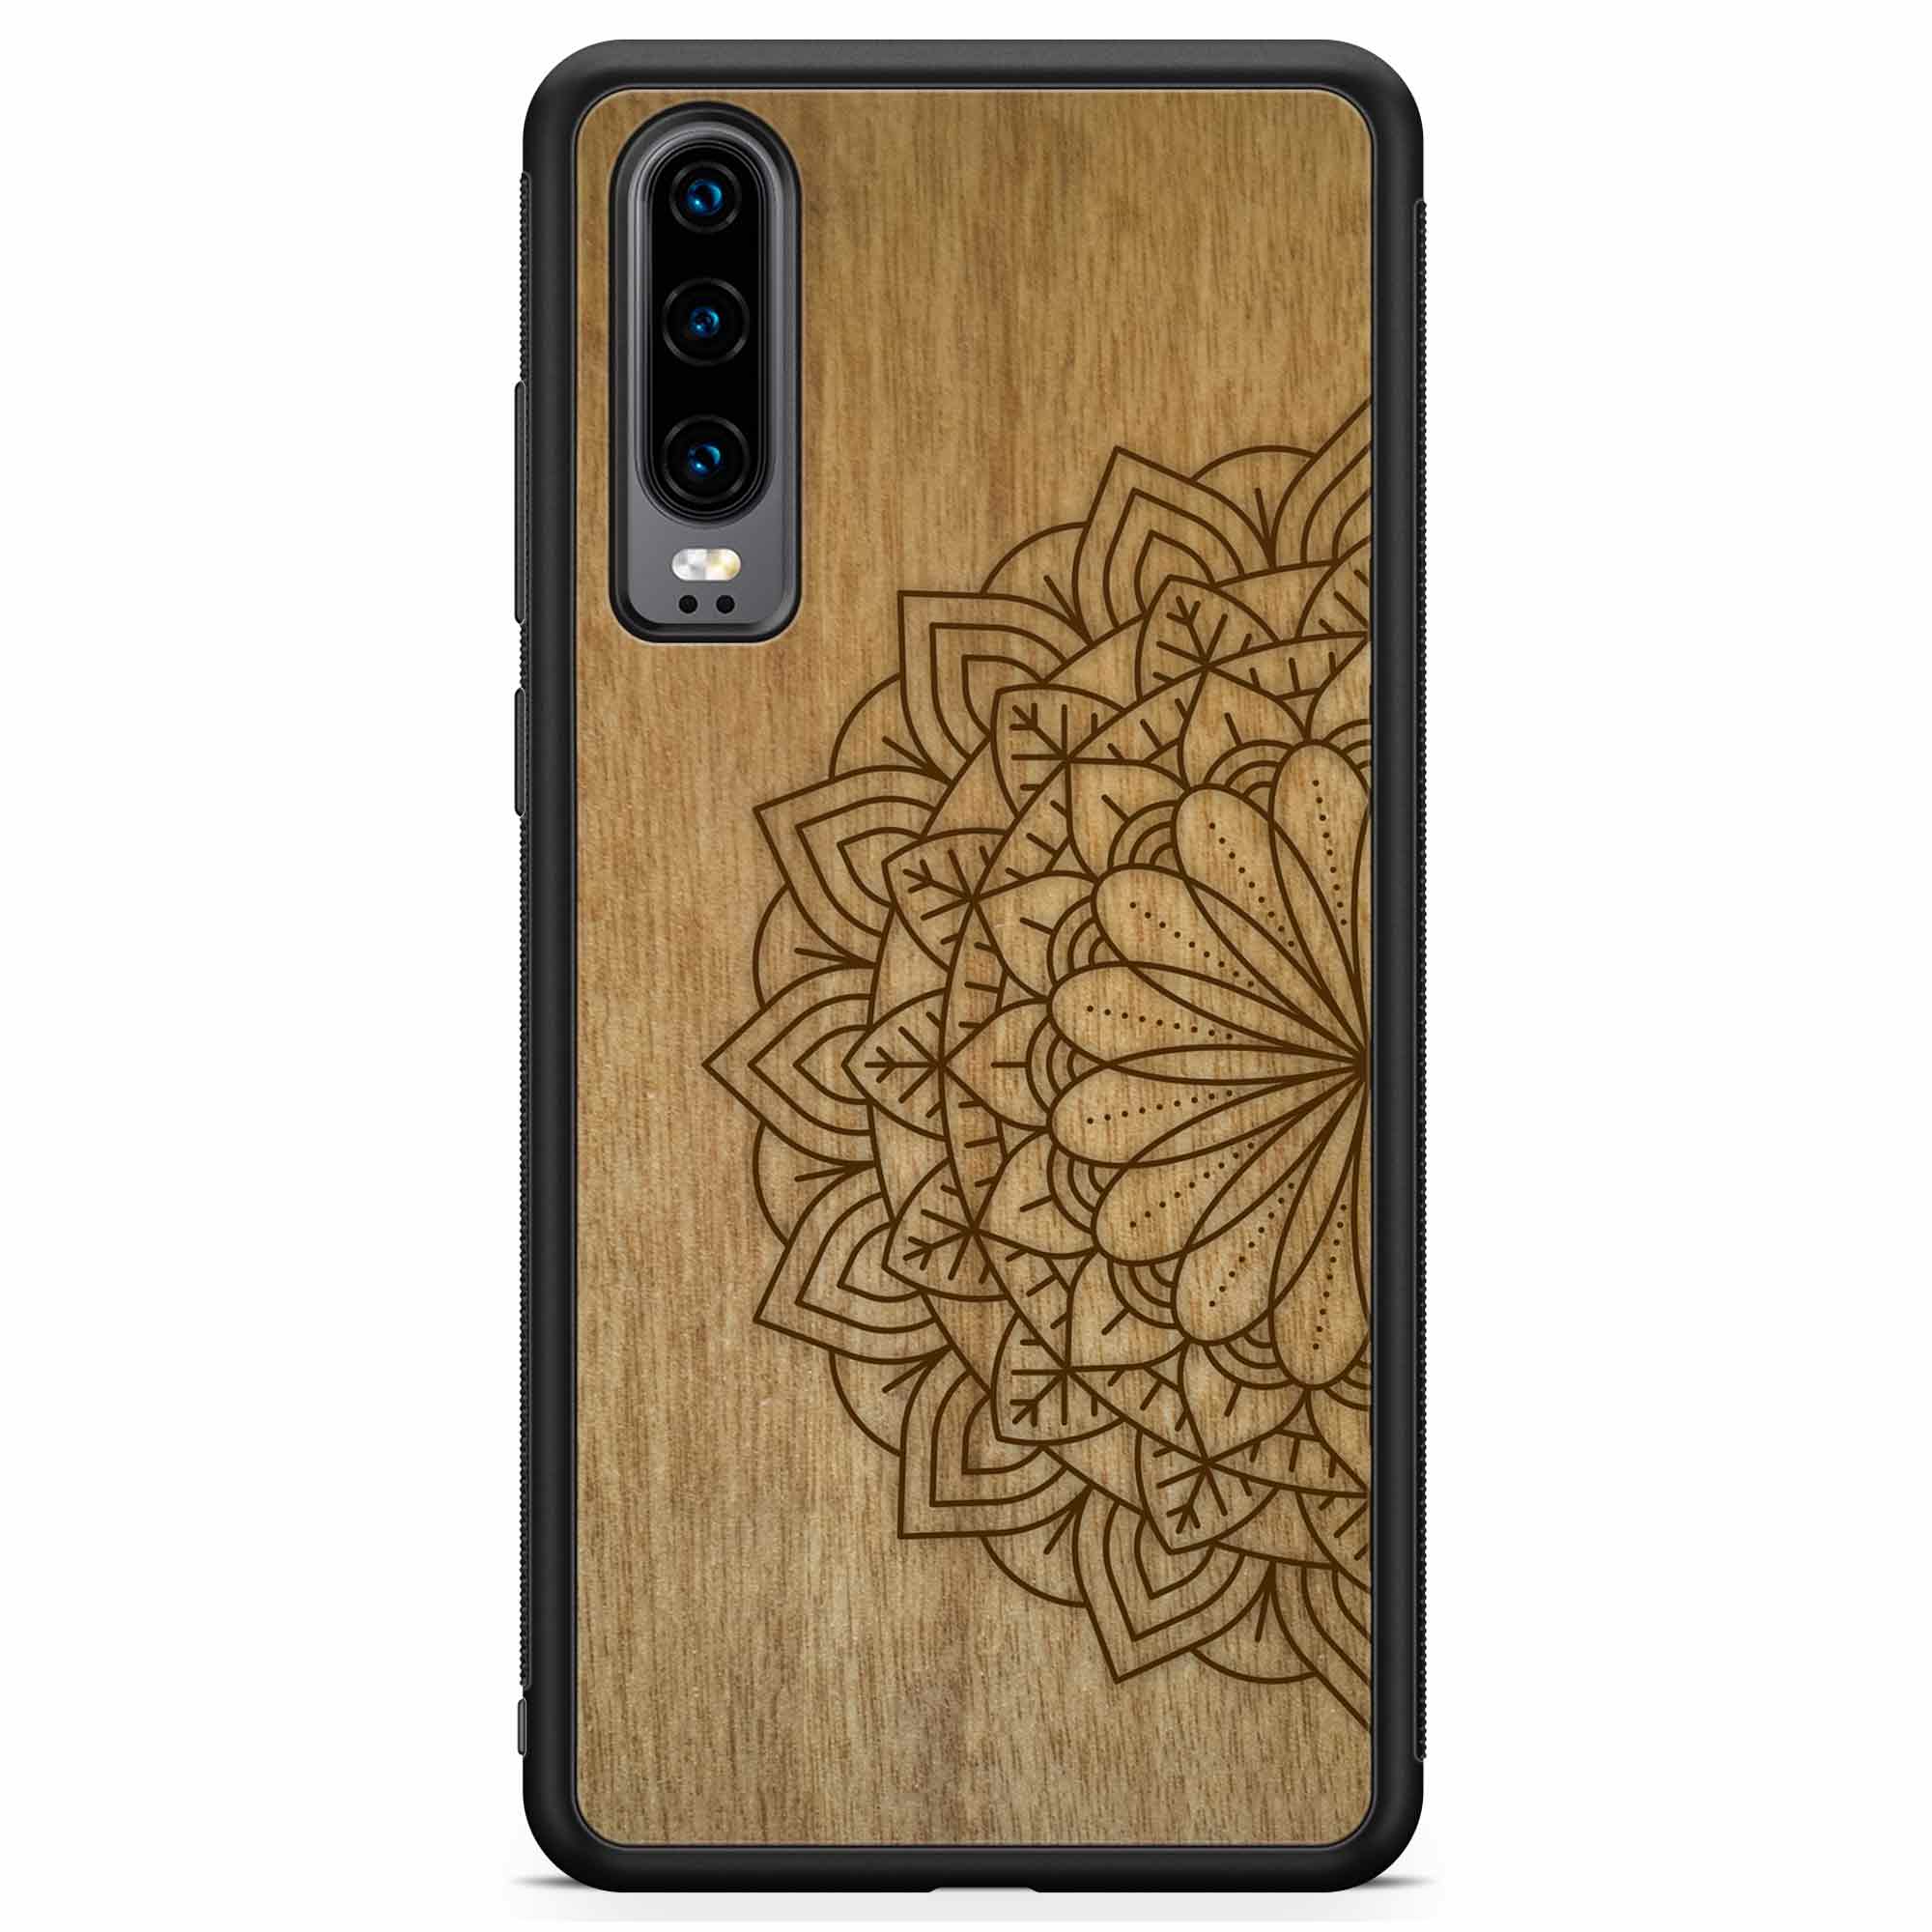 Деревянный чехол для телефона Huawei P30 с гравировкой мандалы